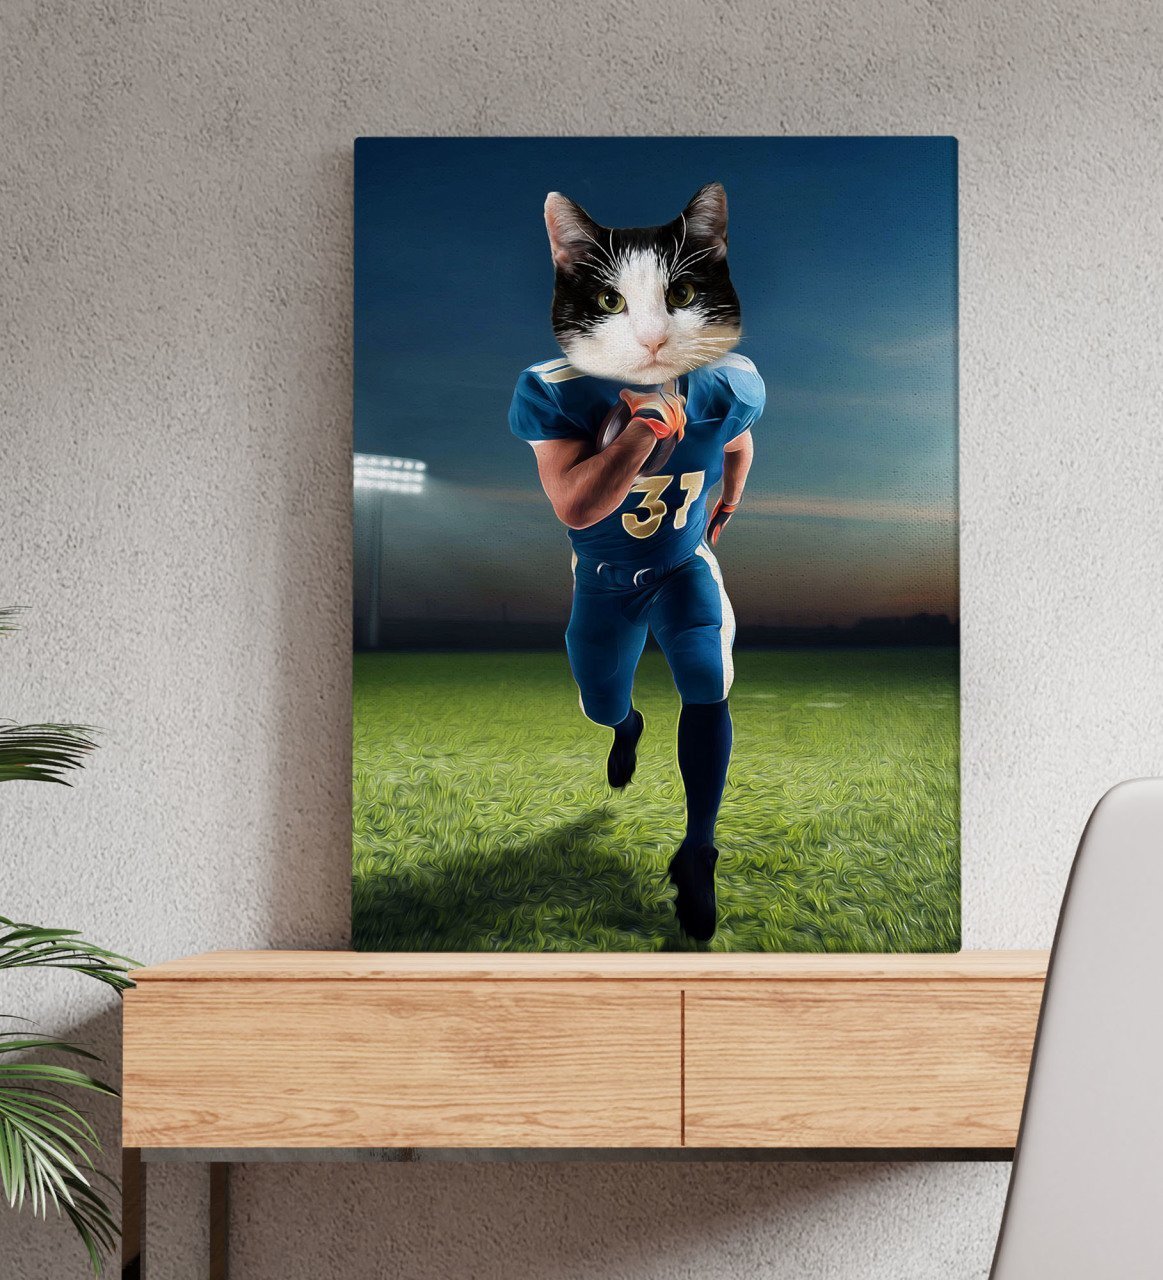 Evcil Dostlara Özel Amerikan Futbolcusu Tasarımlı Portre Kanvas Tablo 50x70cm-5